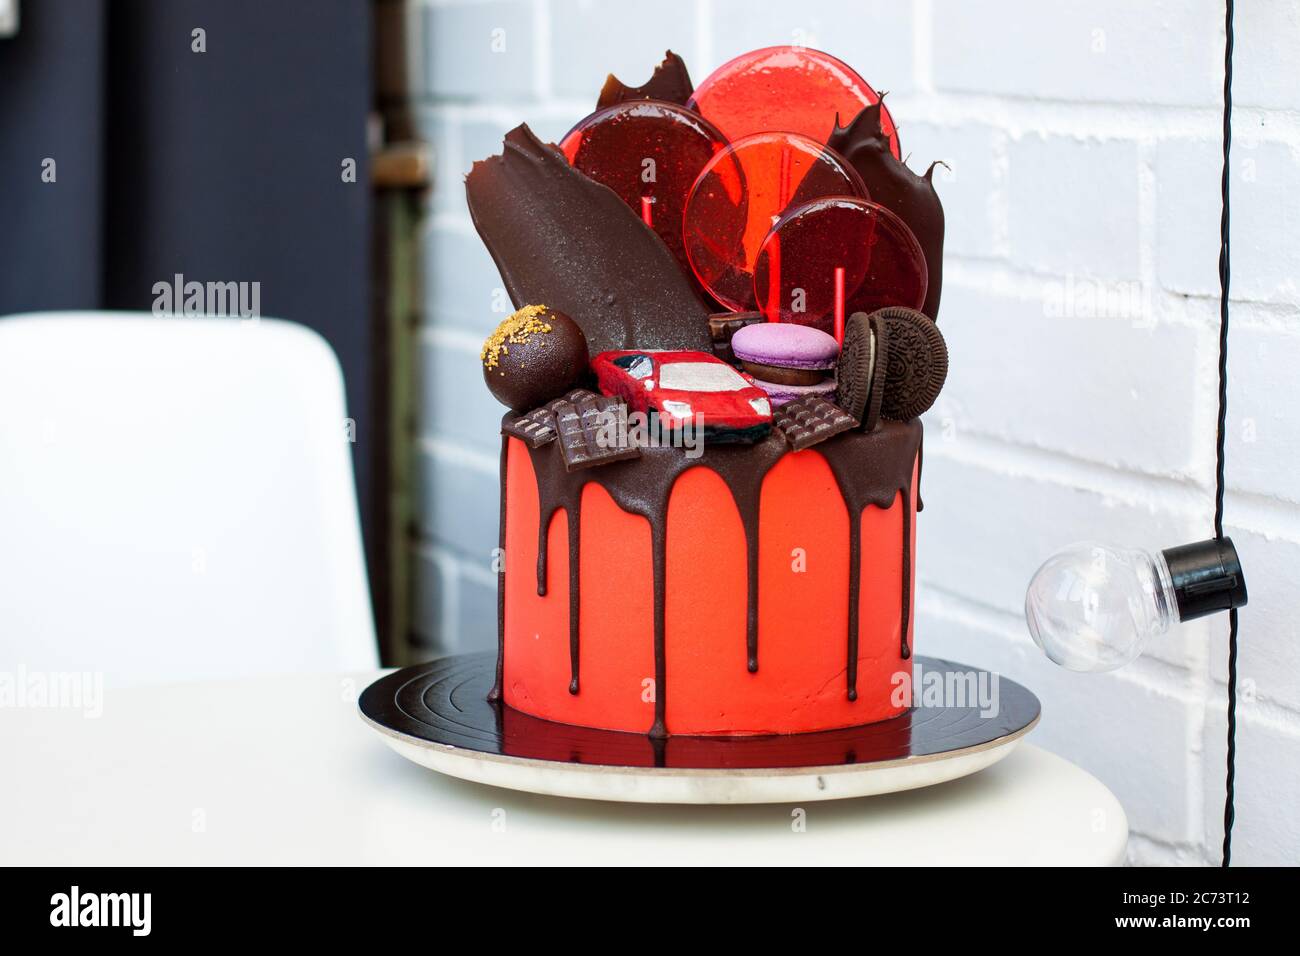 Roter Kuchen mit Schokolade Rennwagen, Schokolade Dekoration, Makronen, Lutscher und Cookies. Weißer Hintergrund. Stockfoto